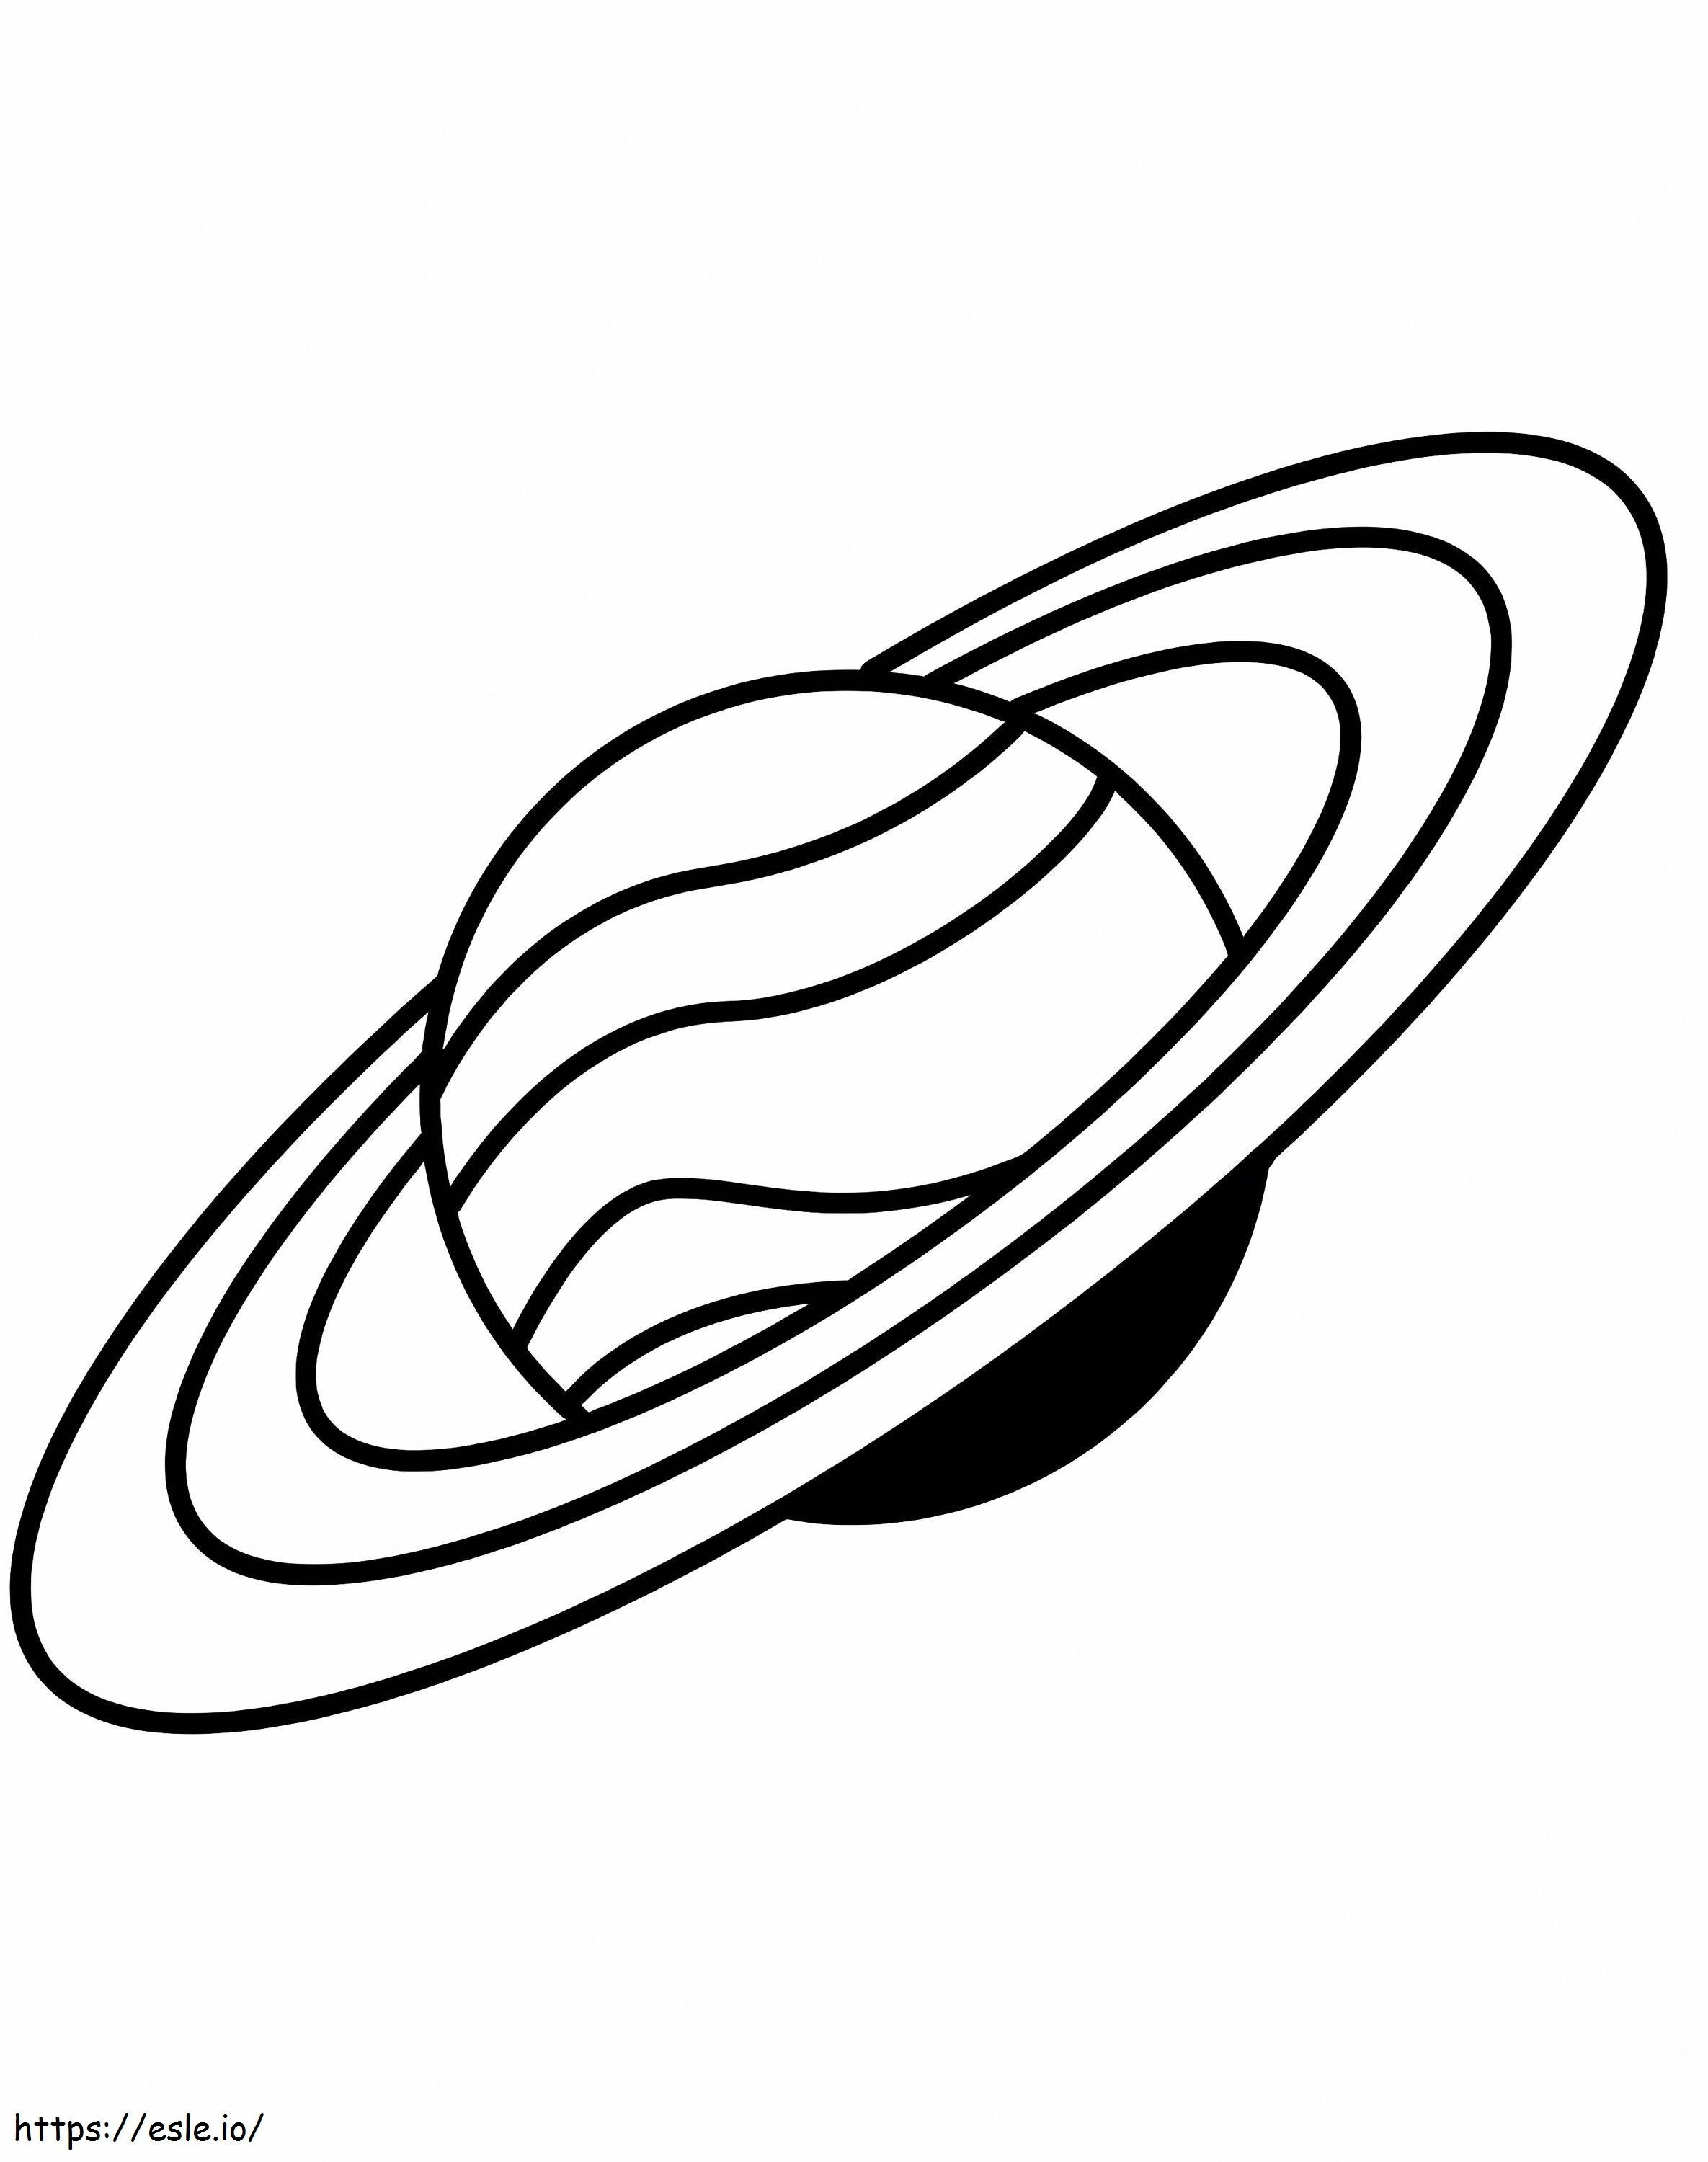 Saturno Simples 1 para colorir